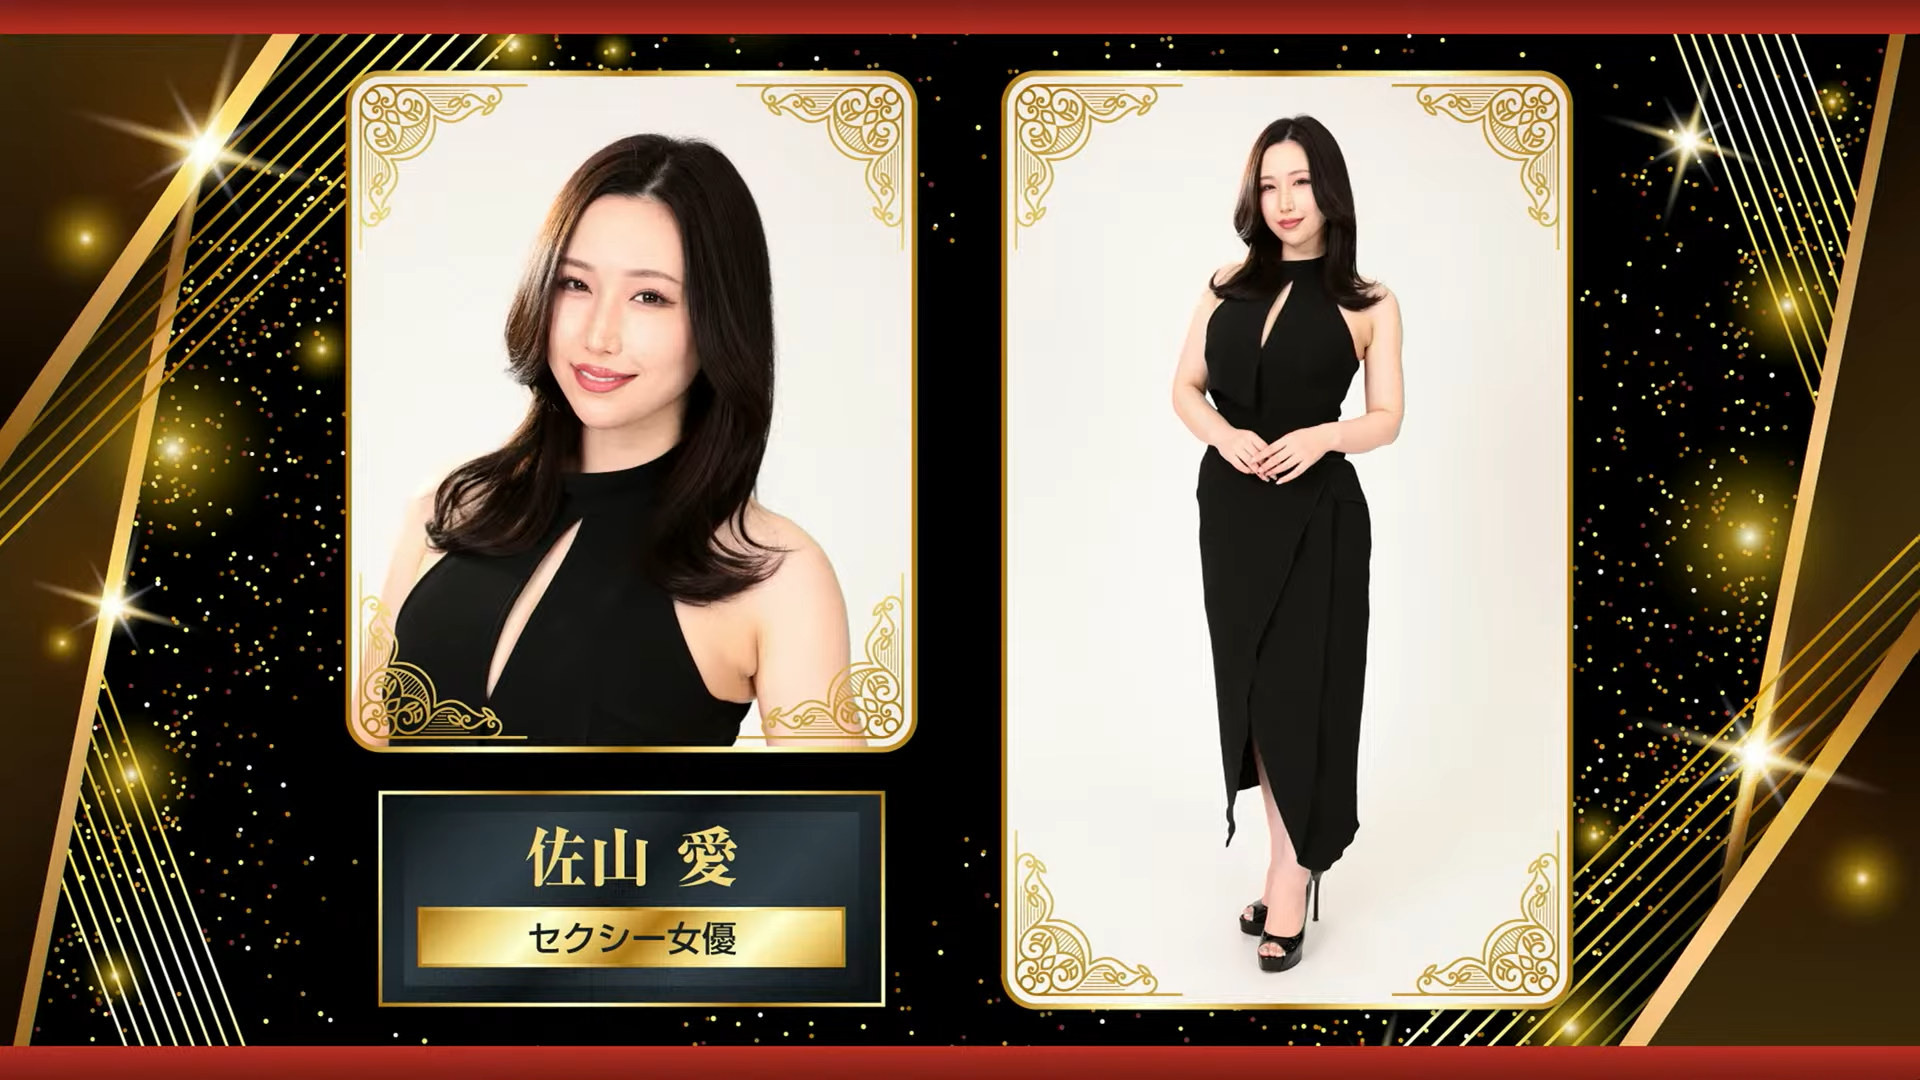 《人中之龙》公布真人酒店小姐选拔活动最终获选者名单 YouTuber “总长” Kson 名列其中插图8